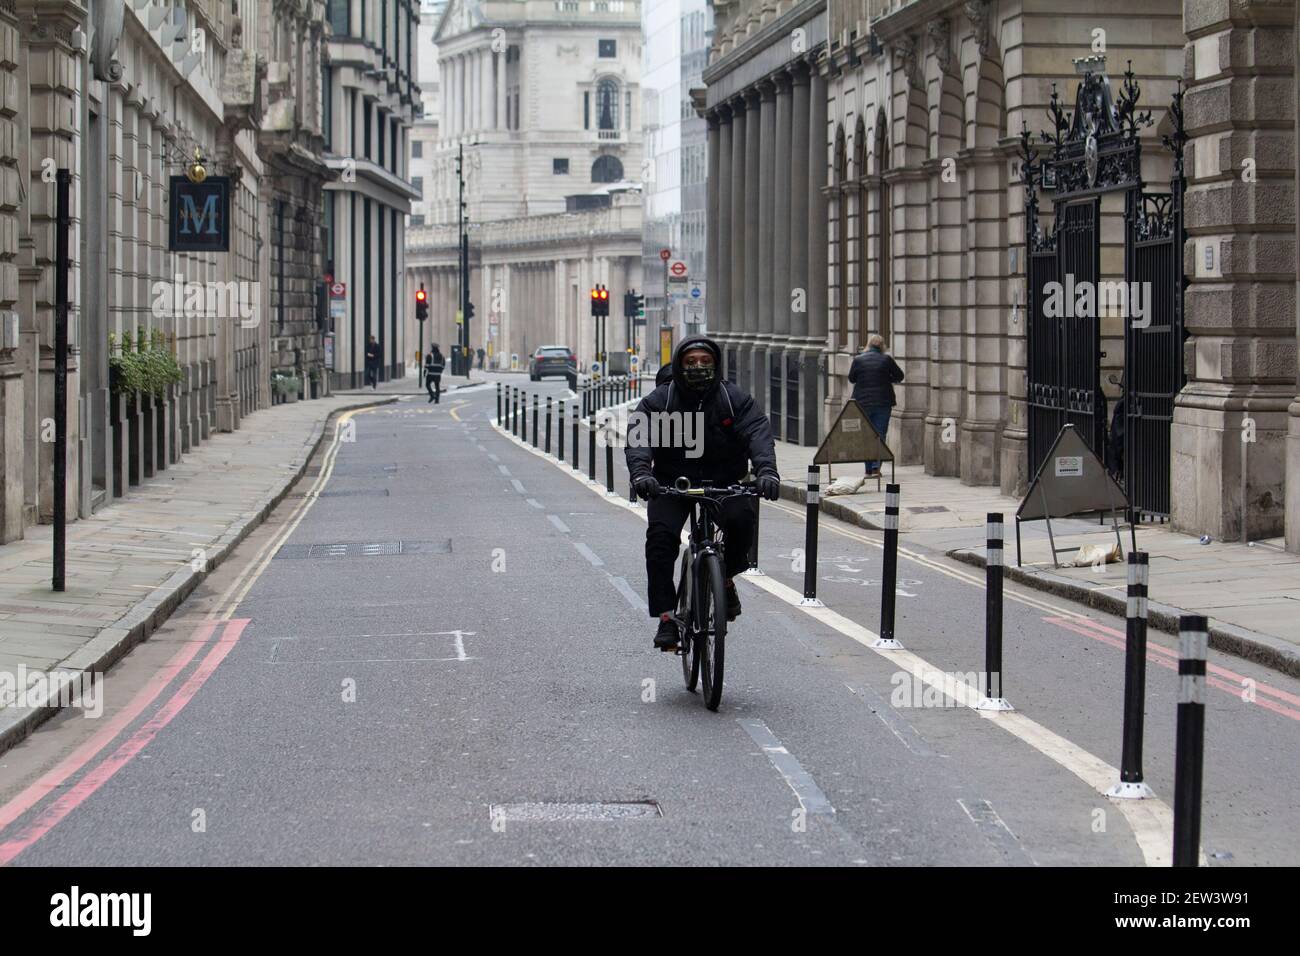 Leere Straßen während der Coronavirus Covid-19 Pandemie Lockdown, City of London mit Bank of England in der Mitte Hintergrund Stockfoto